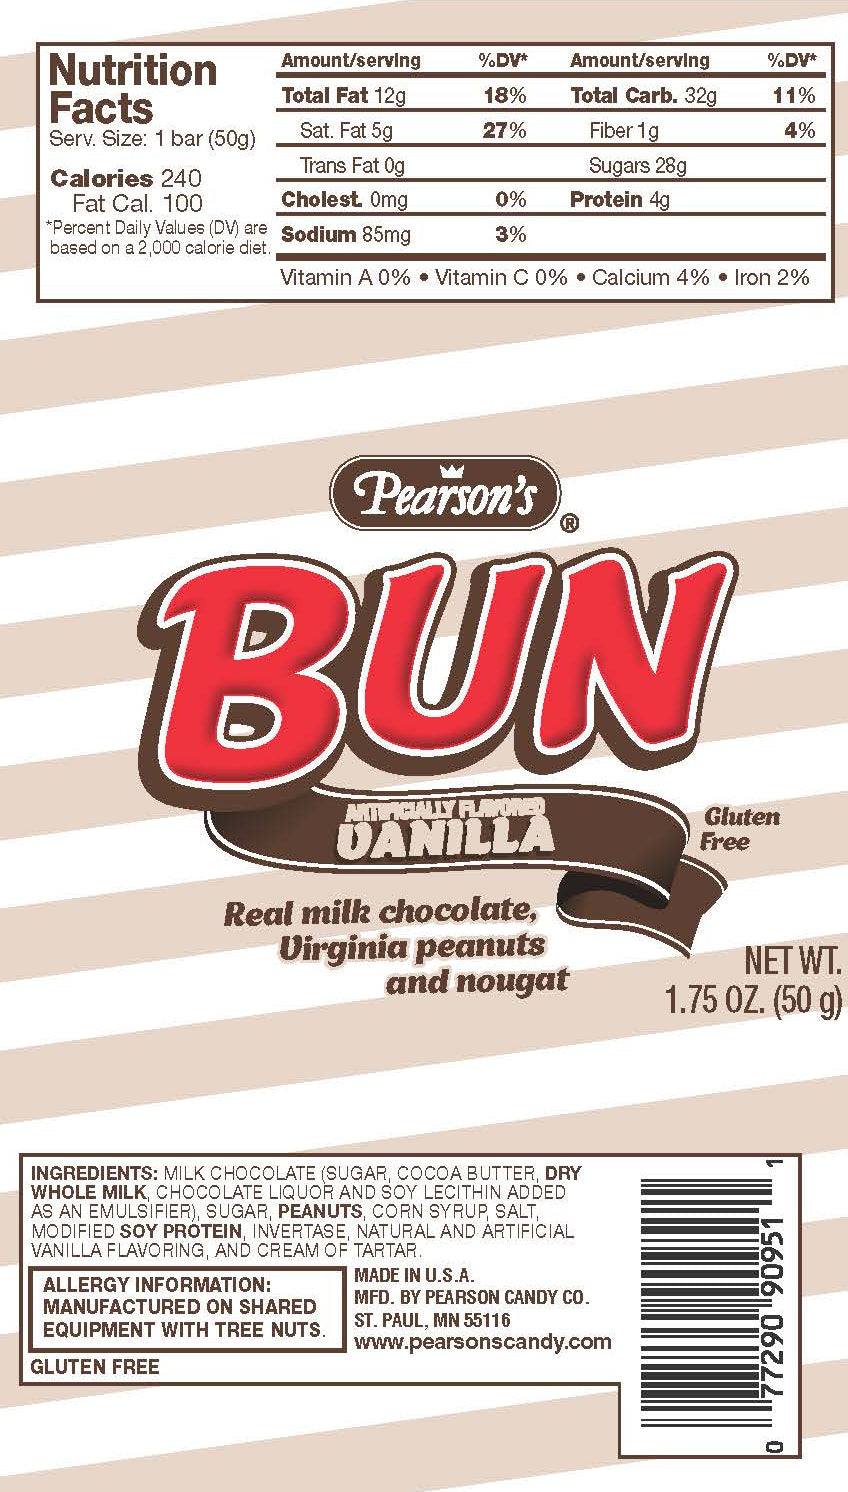 Bun Bar Cluster Bar Bun Vanilla-1.75 oz.-24/Box-12/Case